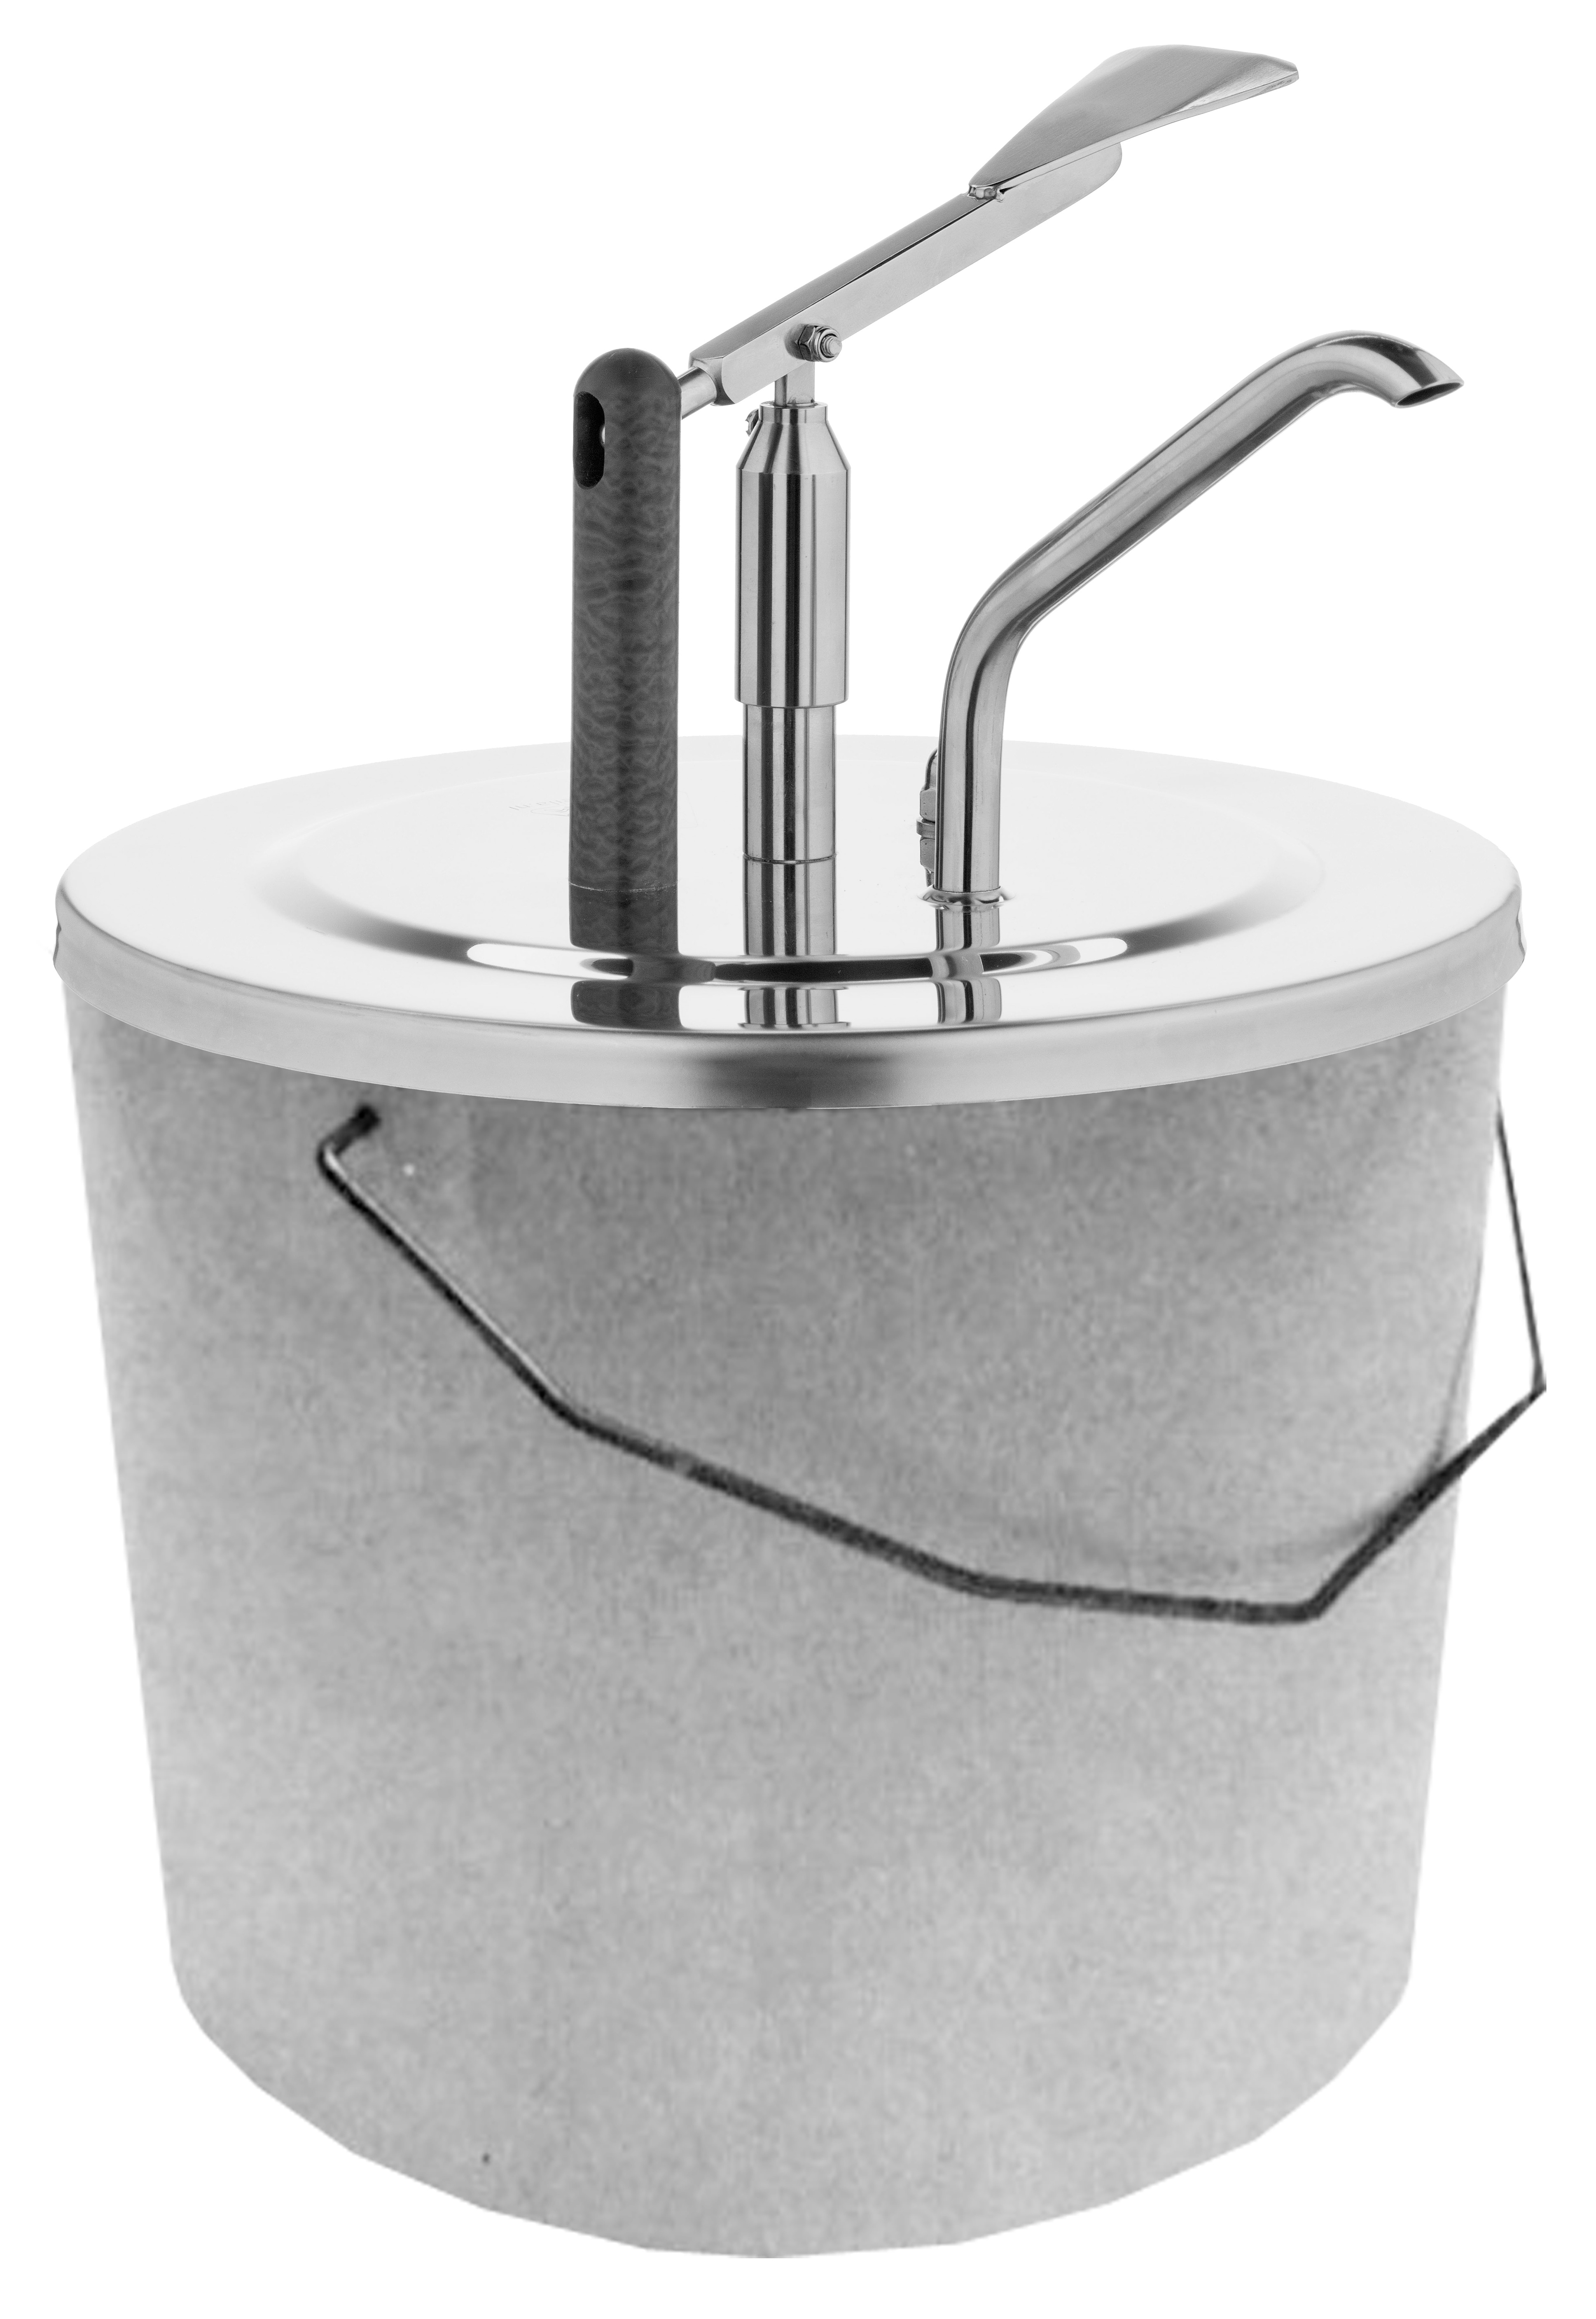 Handpumpe & Edelstahl Deckel für 10 liter Eimer